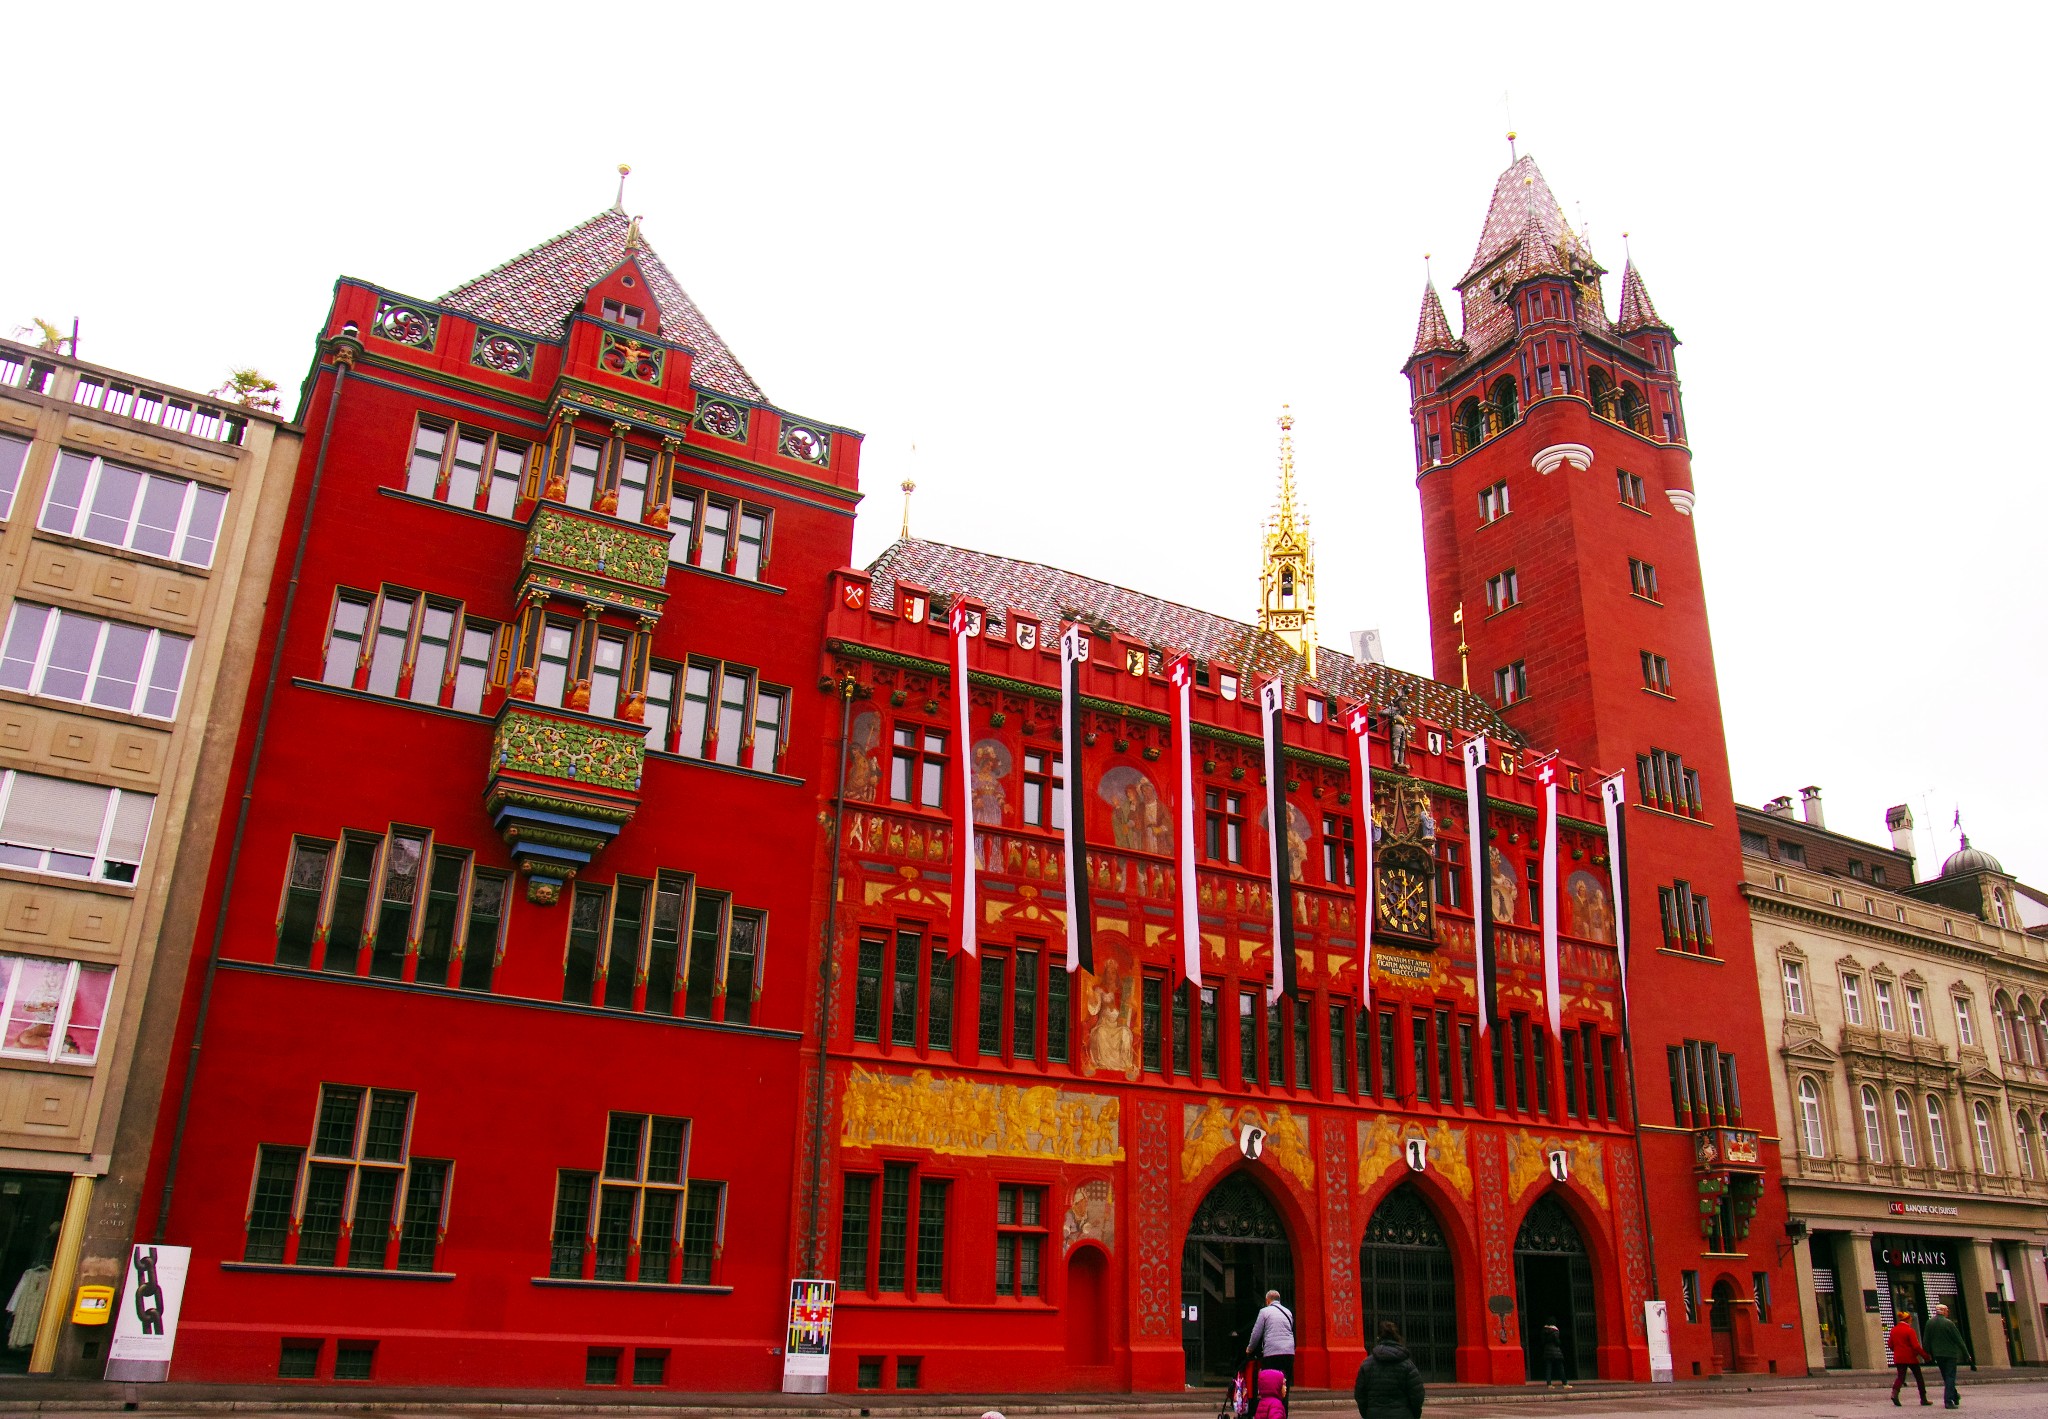 巴塞尔市政厅是一座红色砂岩建筑,拥有独特的塔楼.